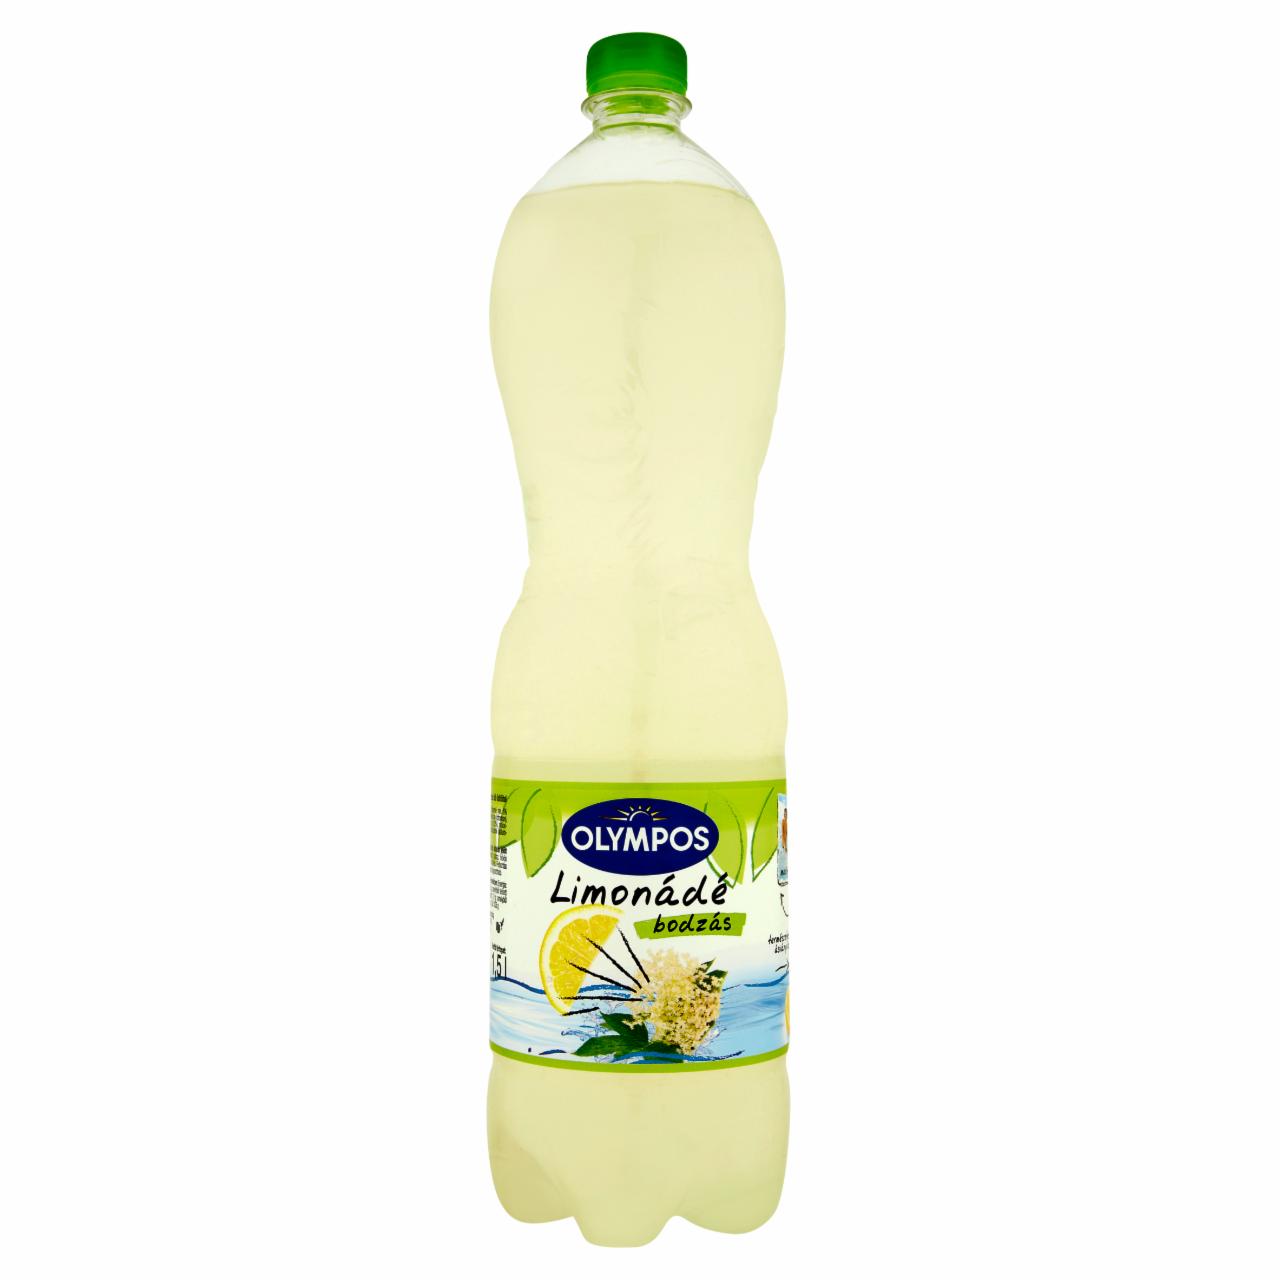 Képek - Olympos Limonádé bodza ízű üdítőital 1,5 l